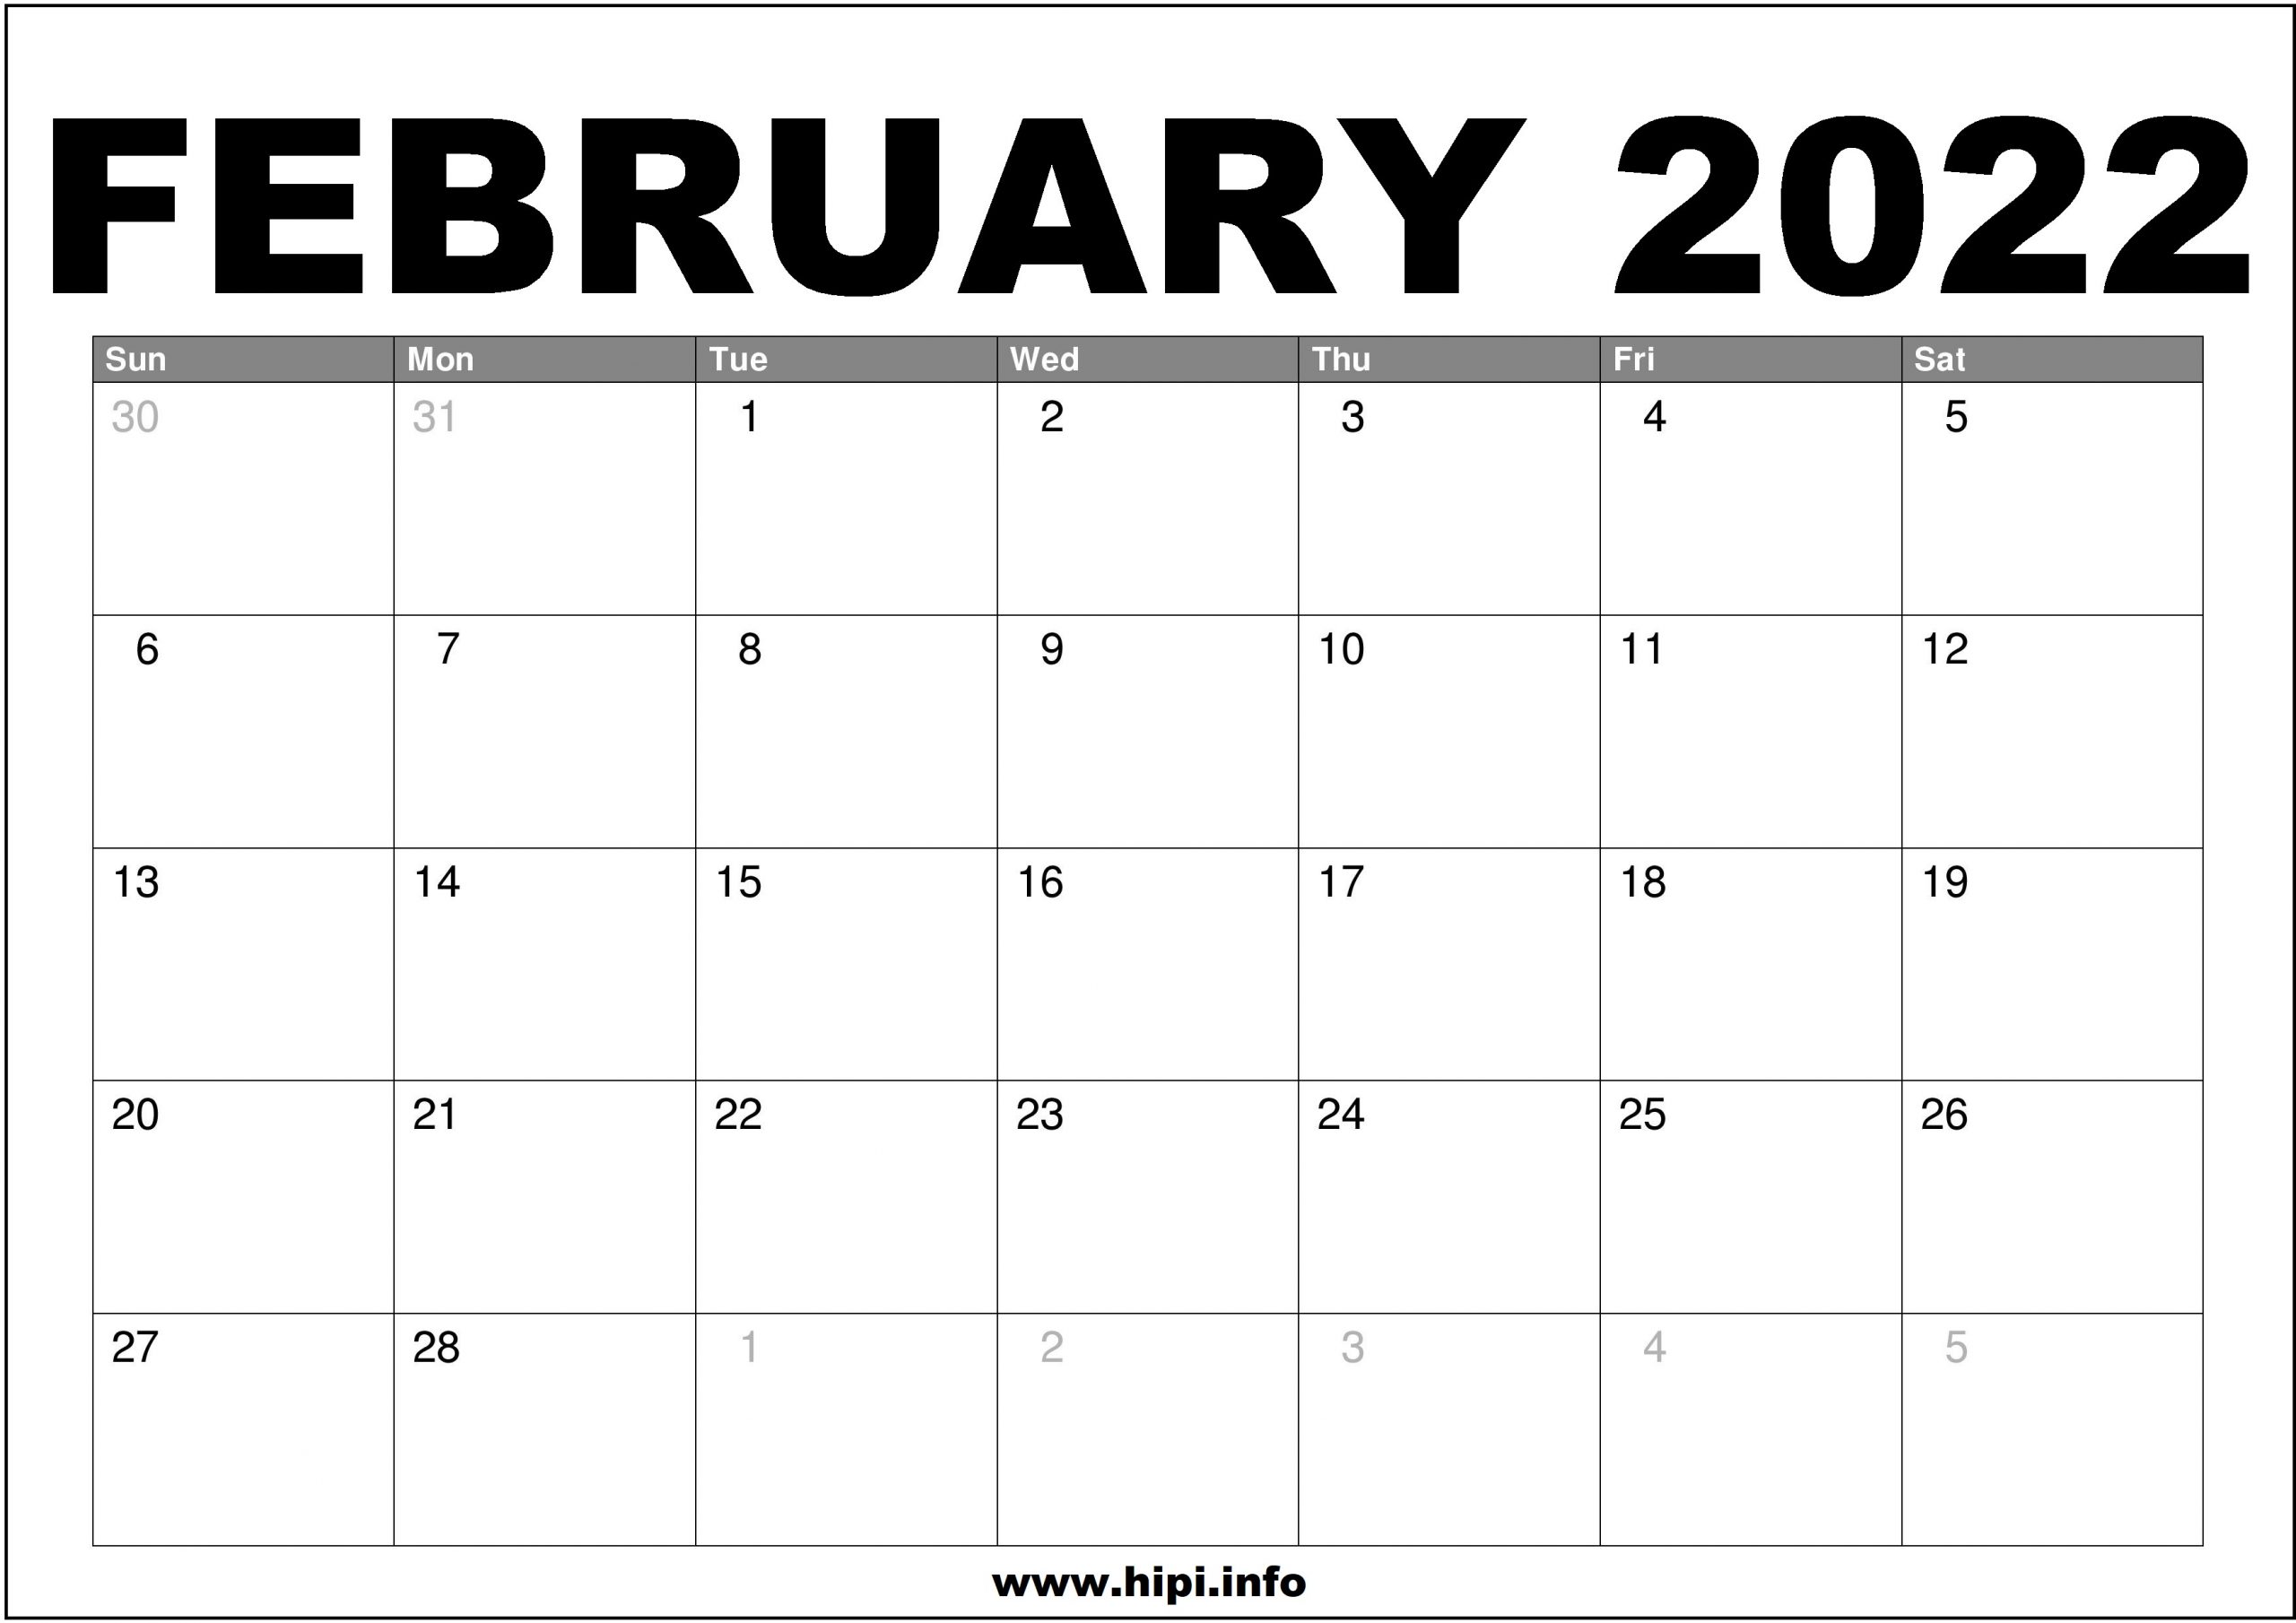 Free February 2022 Calendar February 2022 Calendar Printable Free - Hipi.info | Calendars Printable Free